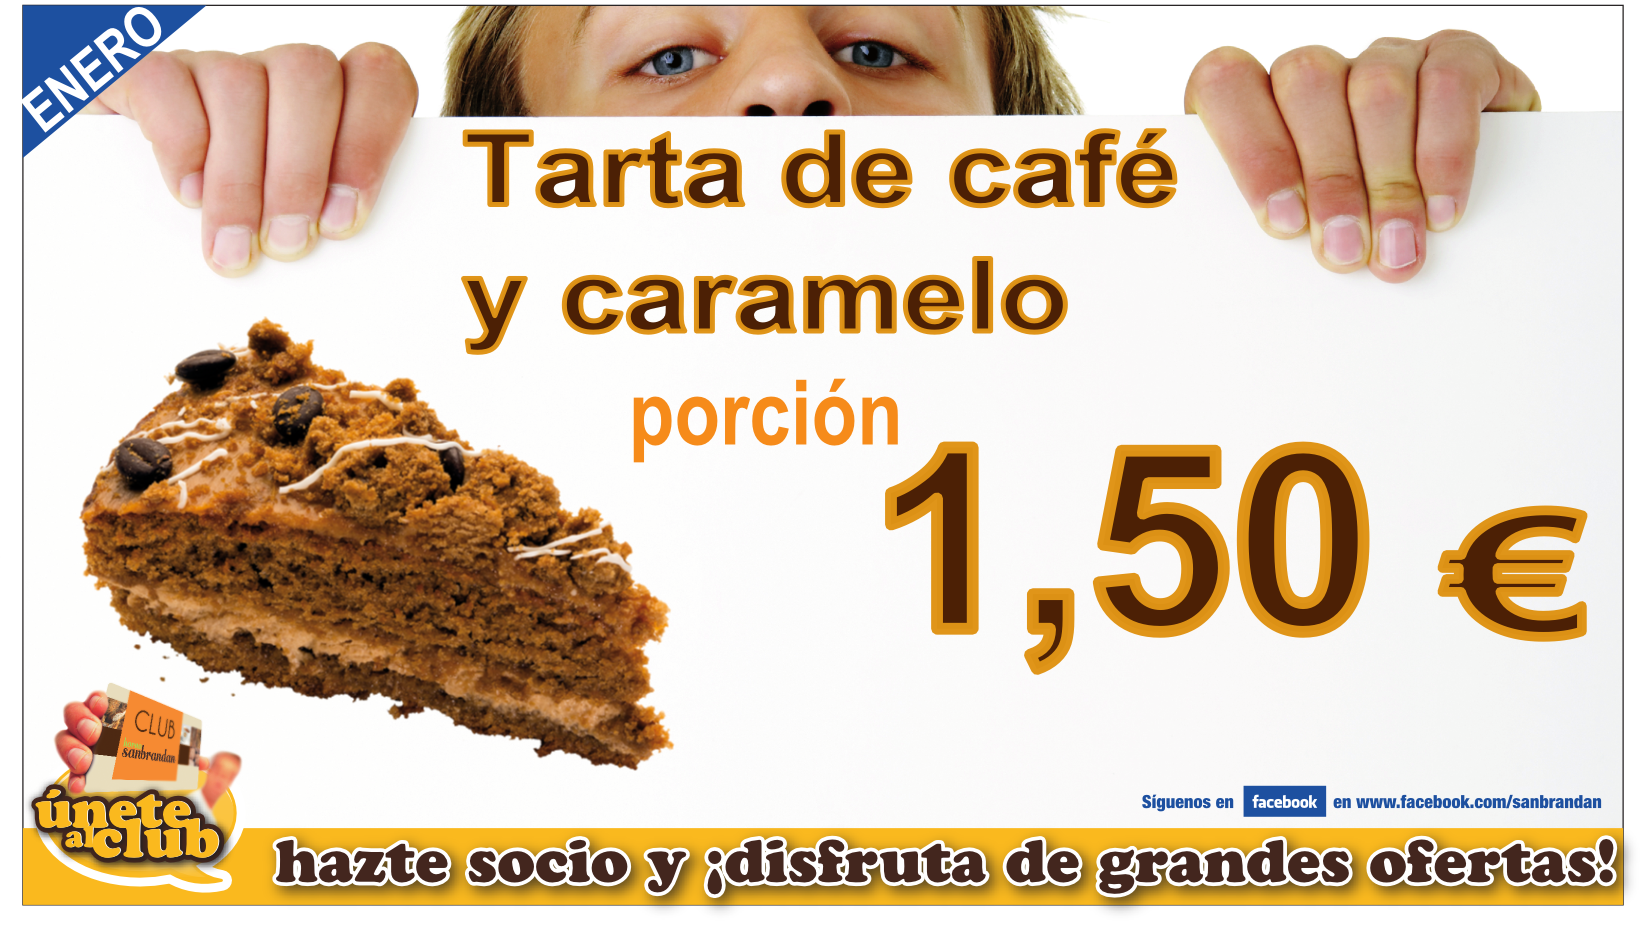 Porción tarta de café y caramelo 1,50 €